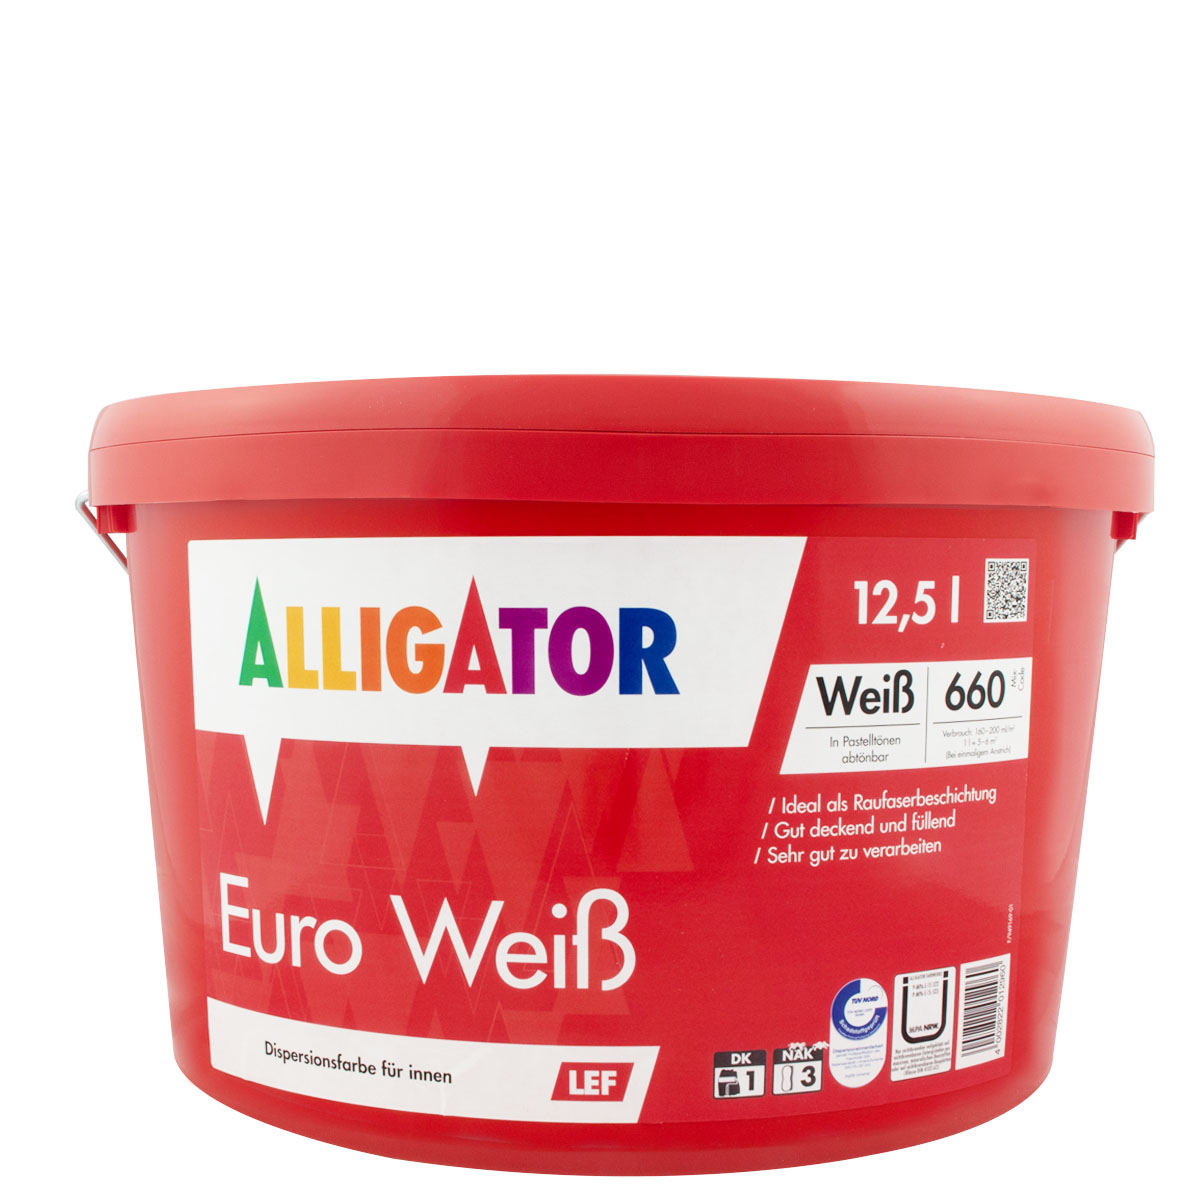 Alligator Euro Weiß LEF 12,5L weiss, Wandfarbe, Dispersionsfarbe, stumpfmatt